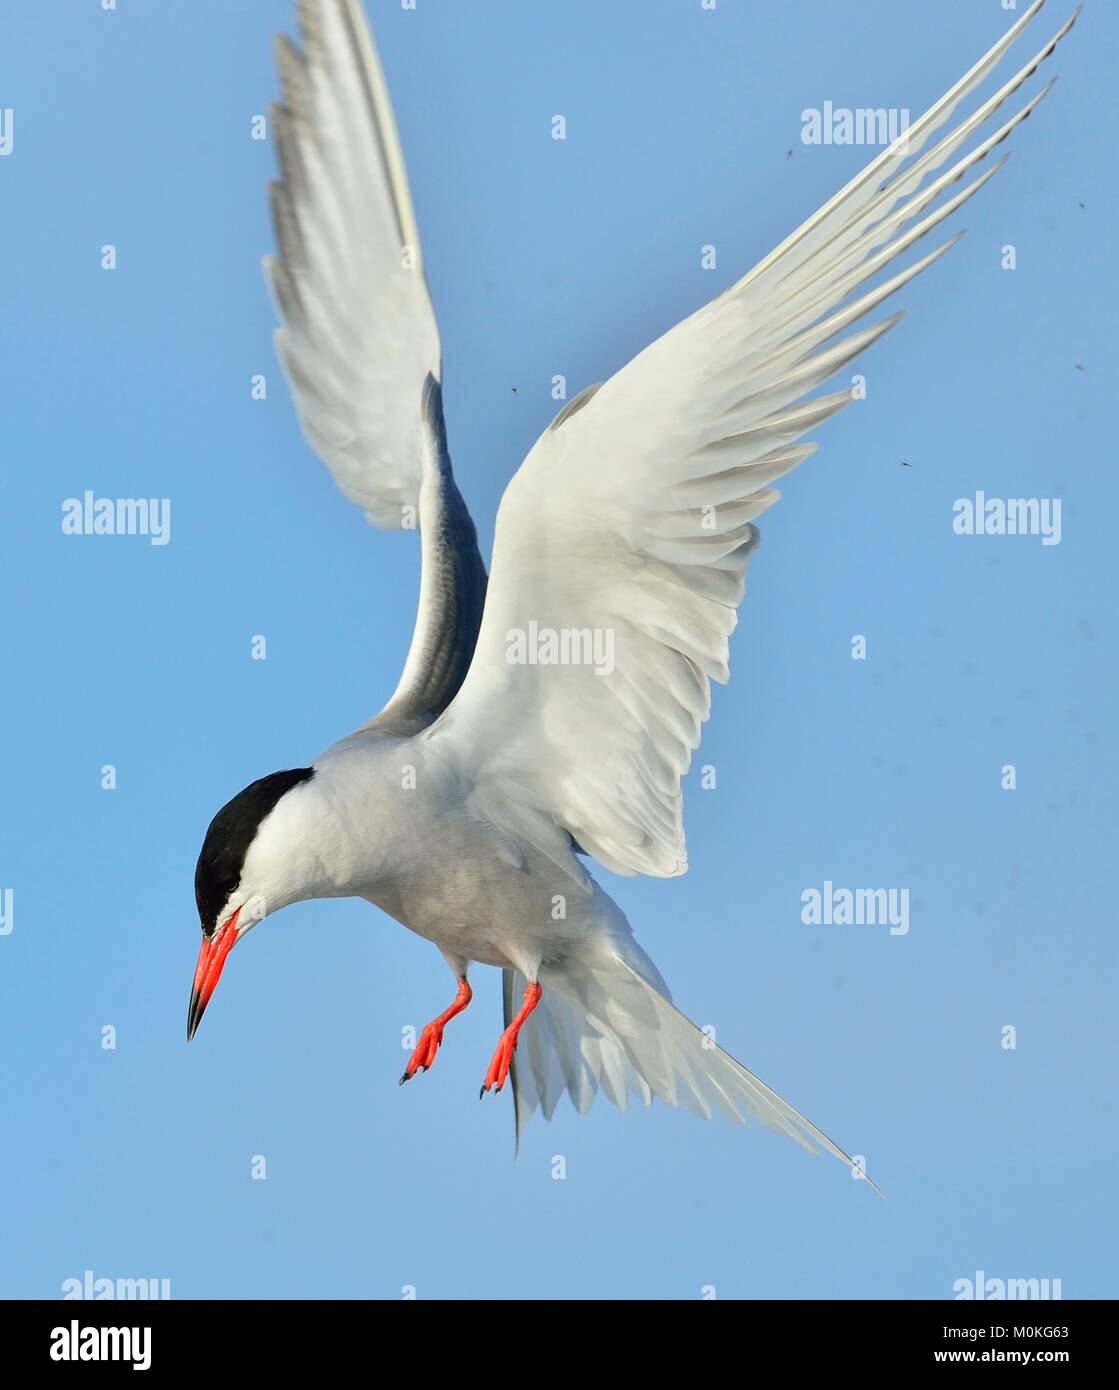 Closeup Ritratto di comune Tern (Sterna hirundo). Adulto tern comune in volo sul cielo blu sullo sfondo. Cielo blu sullo sfondo Foto Stock